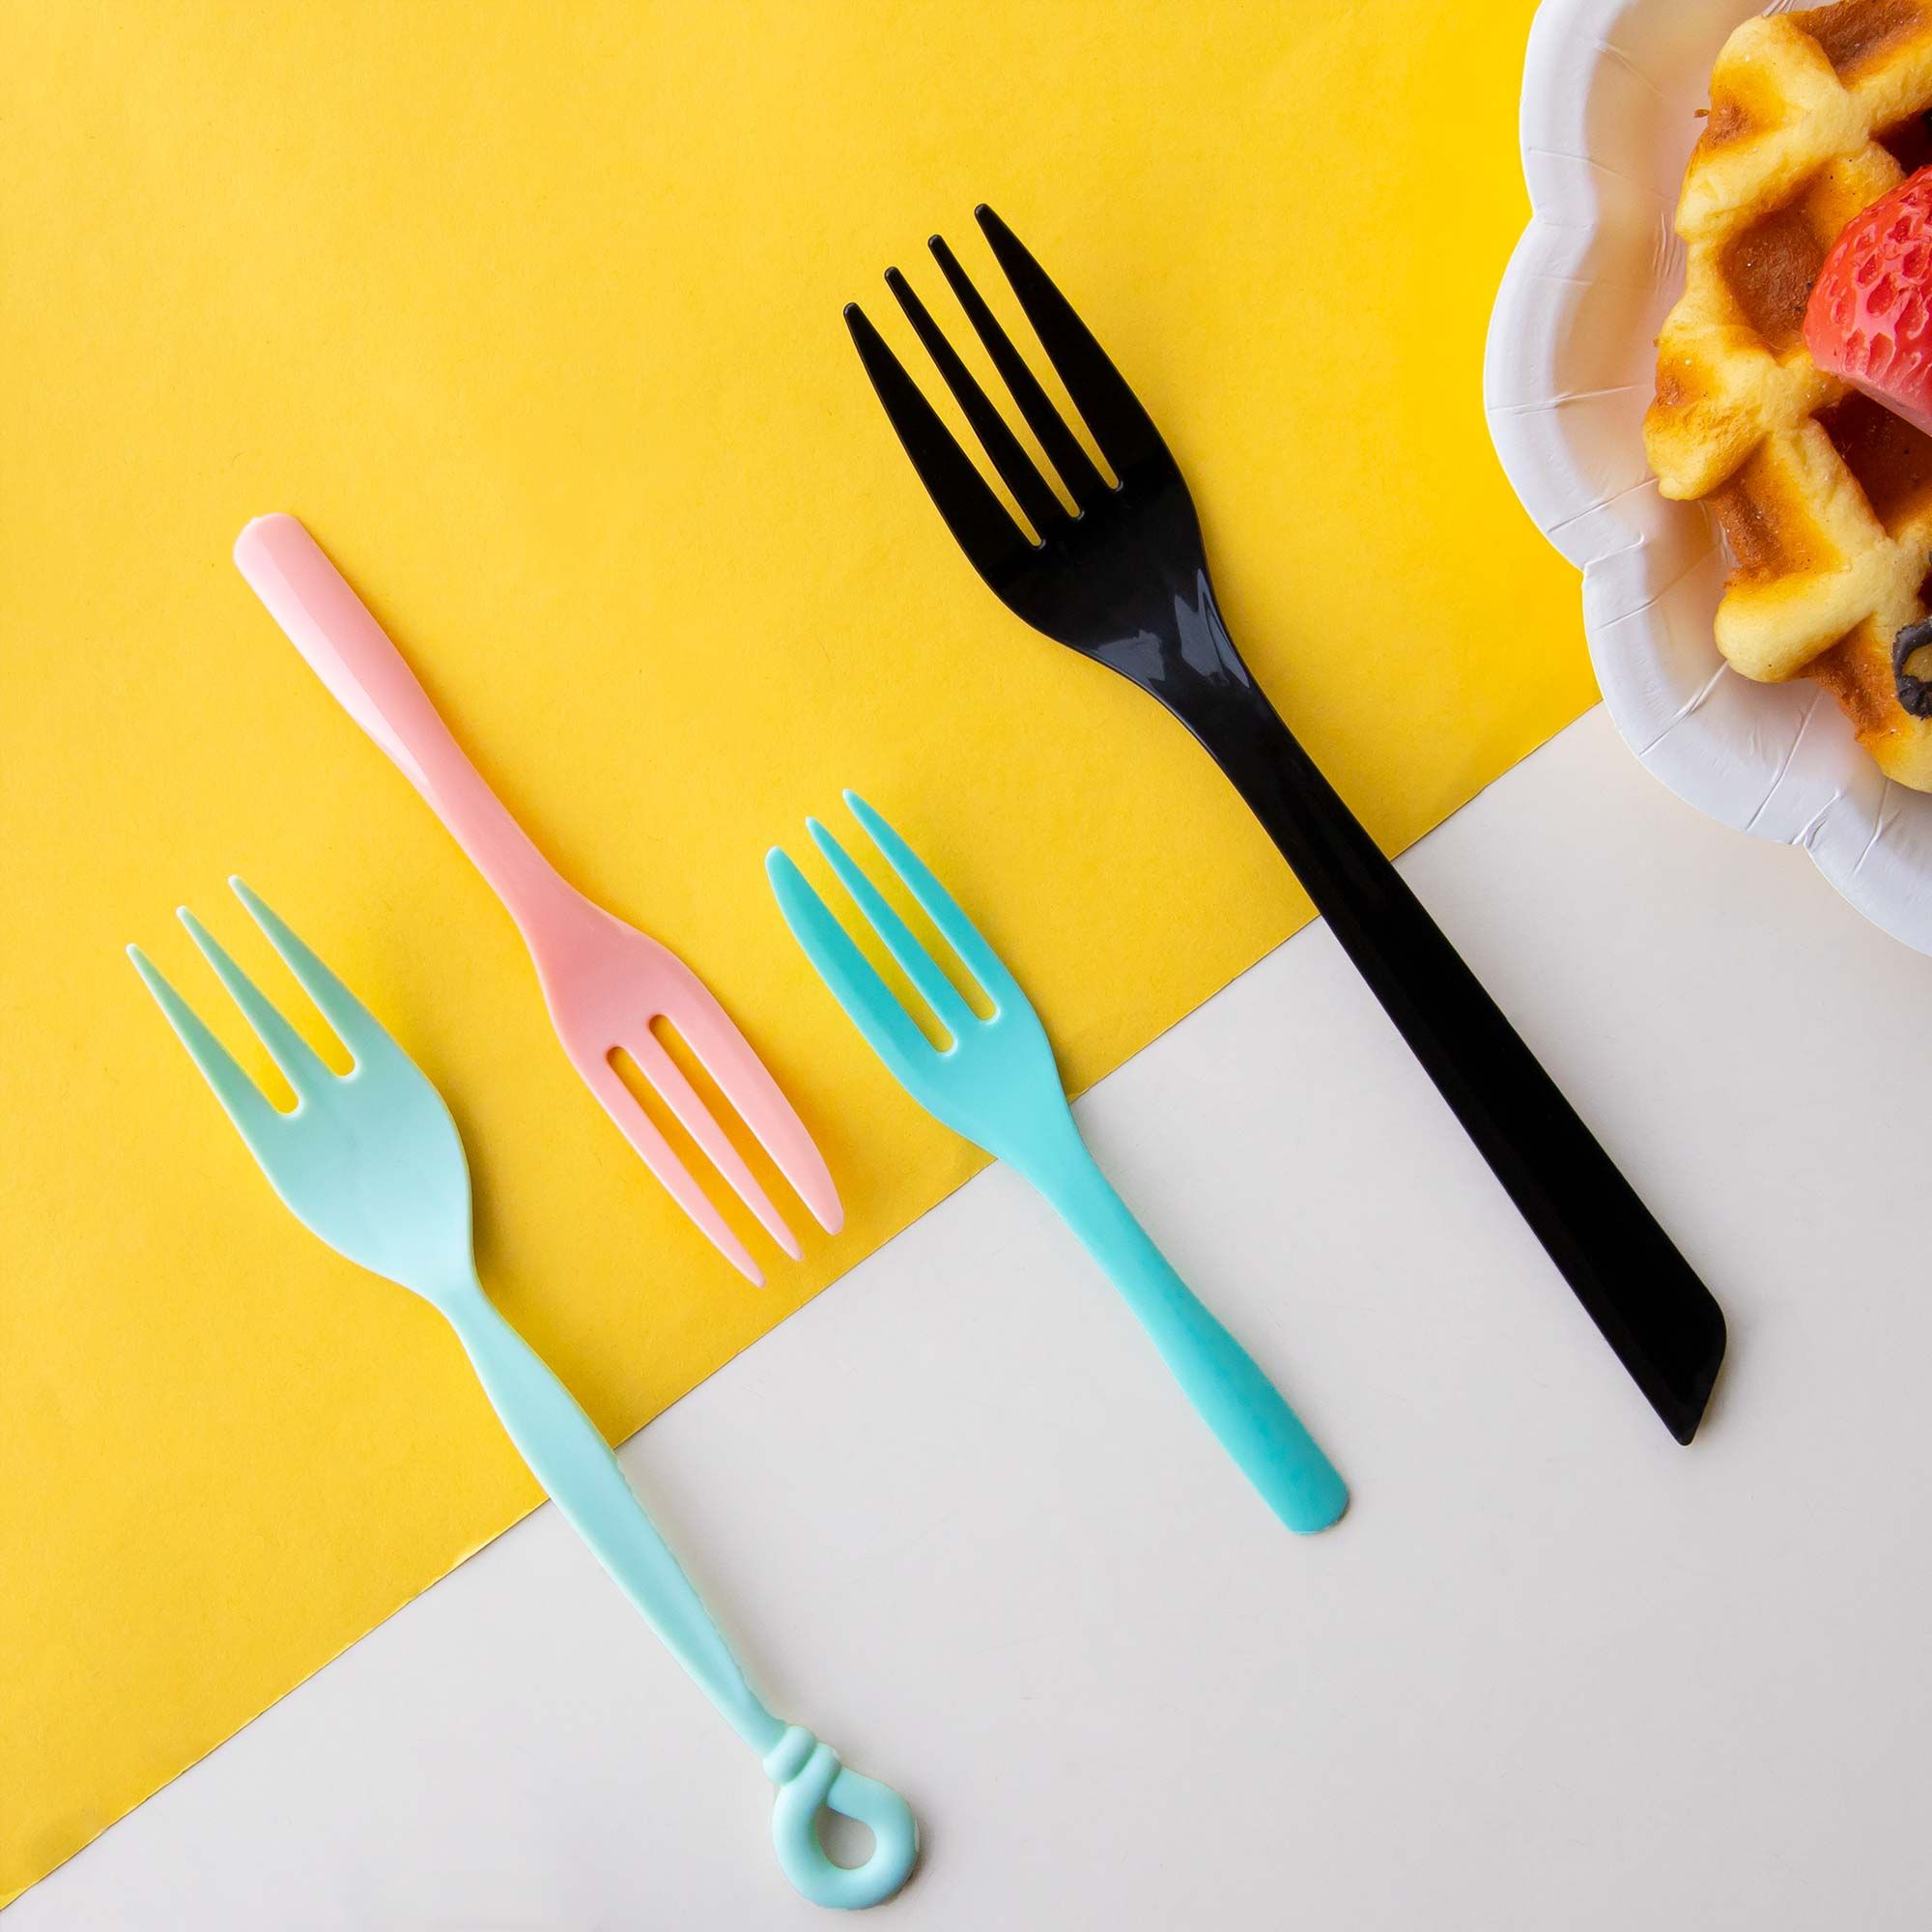 Fourchette en plastique - Fourchettes jetables, fourchettes colorées, Conception de couverts en plastique personnalisés et fabrication de  vaisselle en plastique